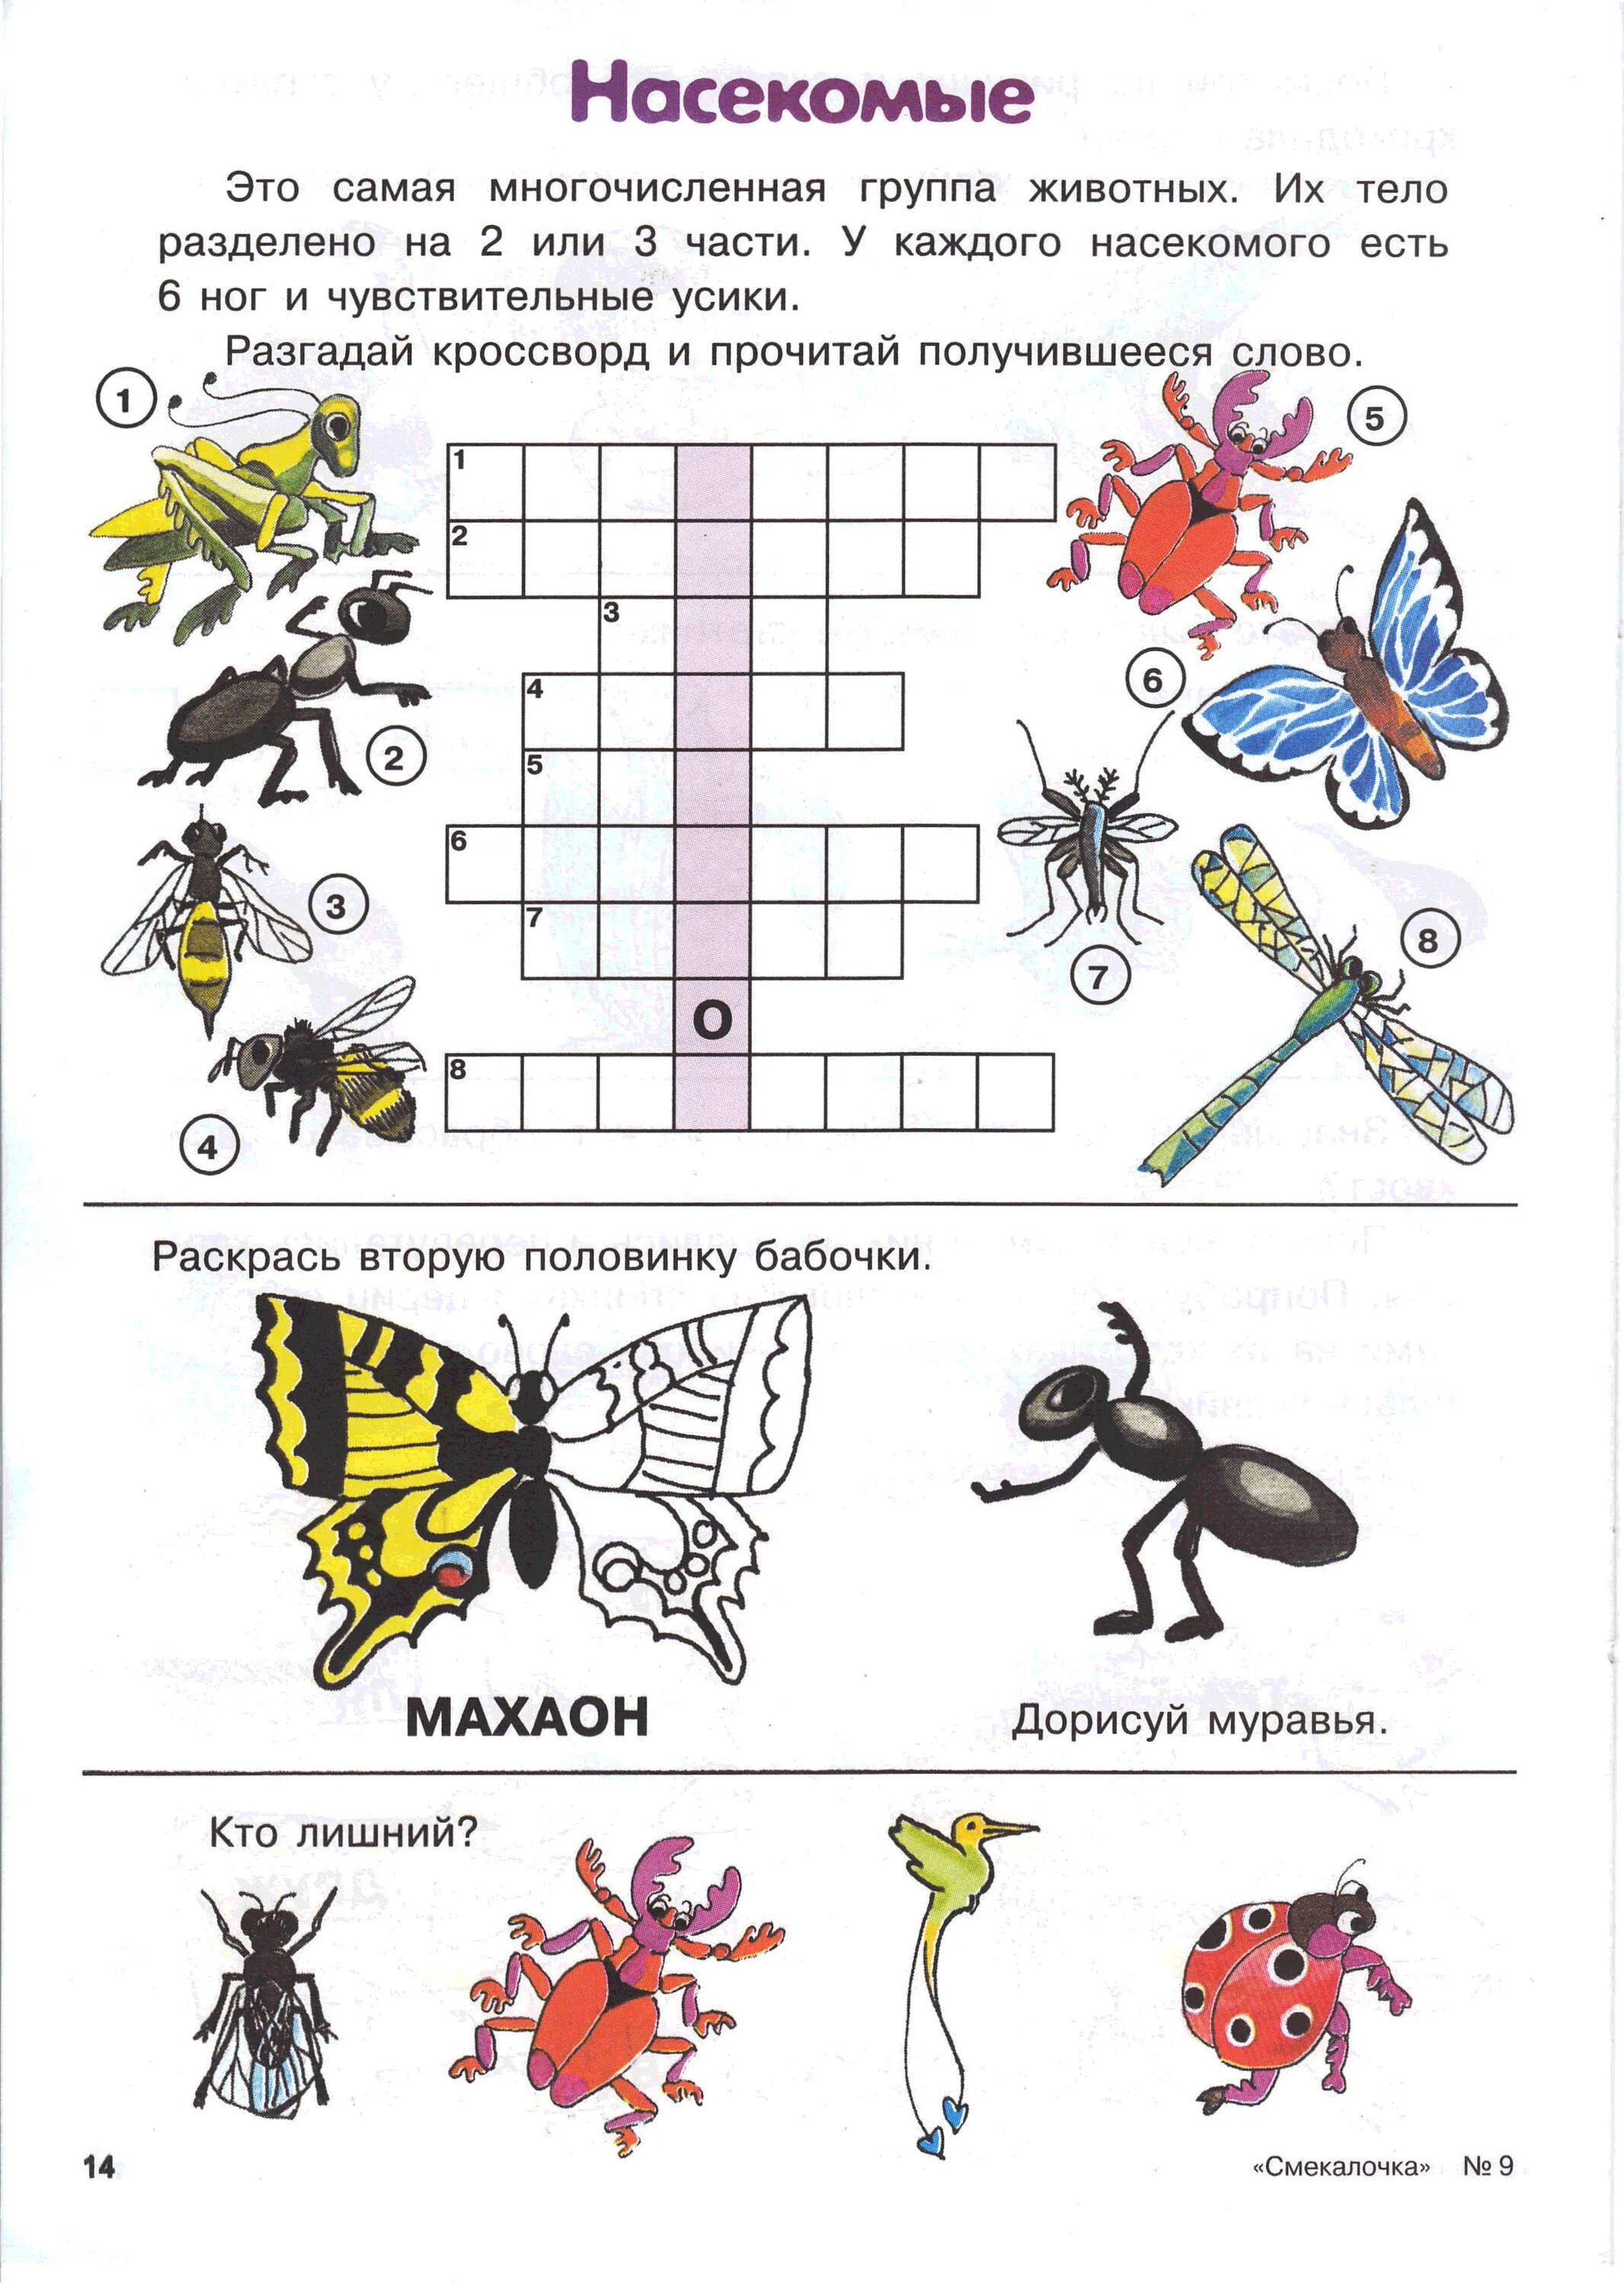 Насекомые задания для дошкольников. Задания на тему насекомые в подготовительной группе. Насекомые задания для детей 6-7 лет. Задания длядля дошкольников насекомые.